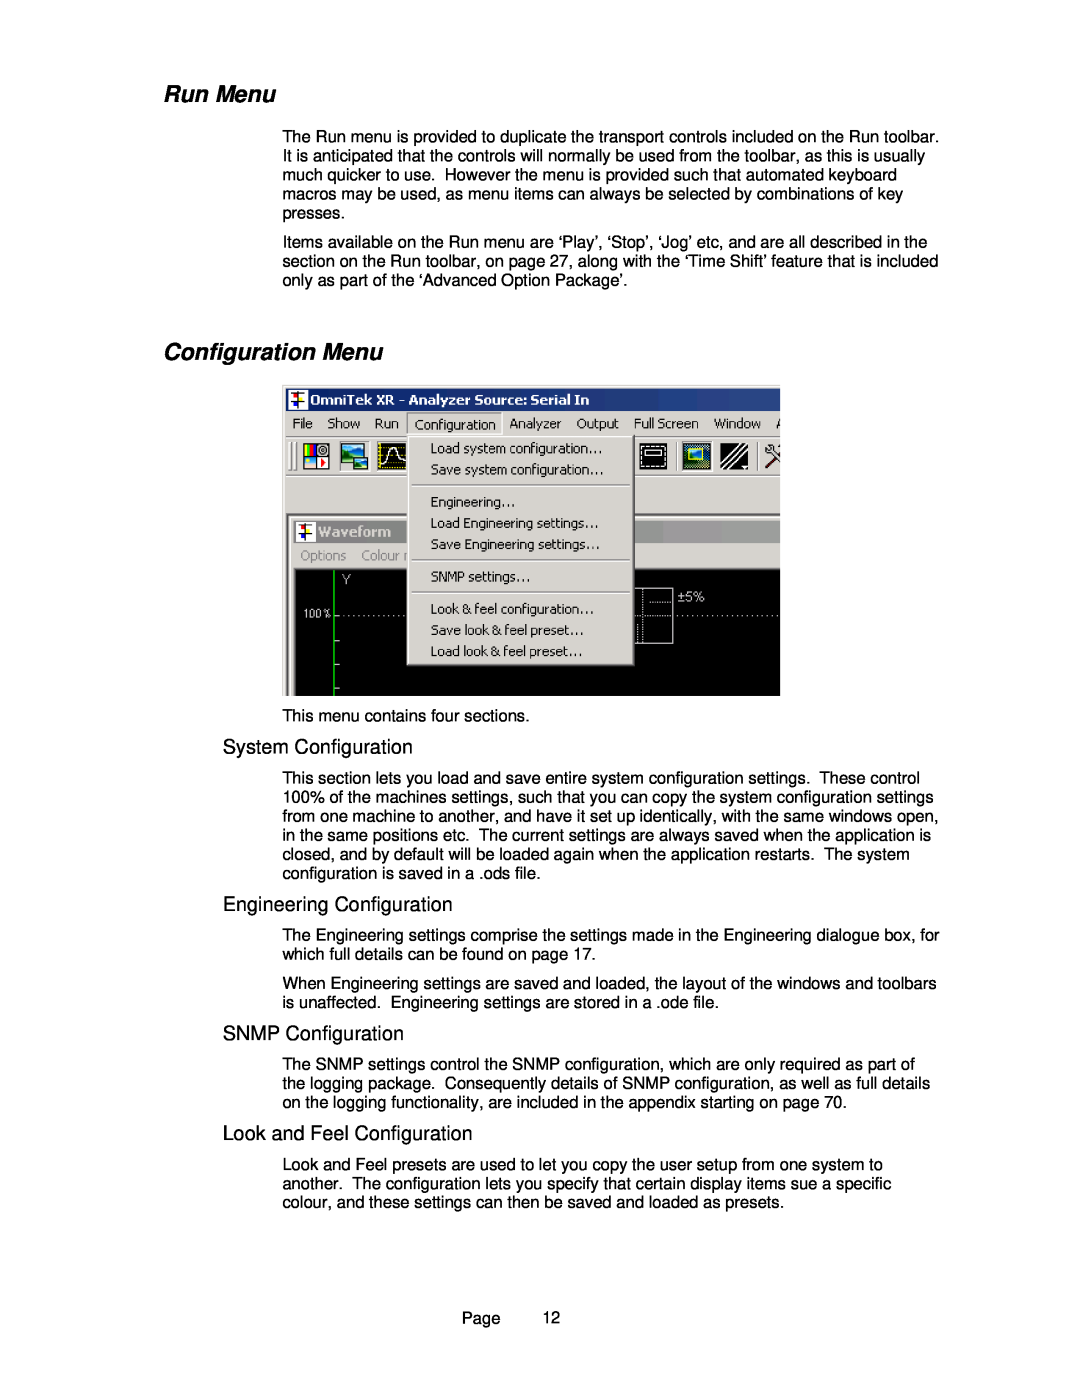 OmniTek OmniTek XR manual Run Menu, Configuration Menu, System Configuration, Engineering Configuration, SNMP Configuration 